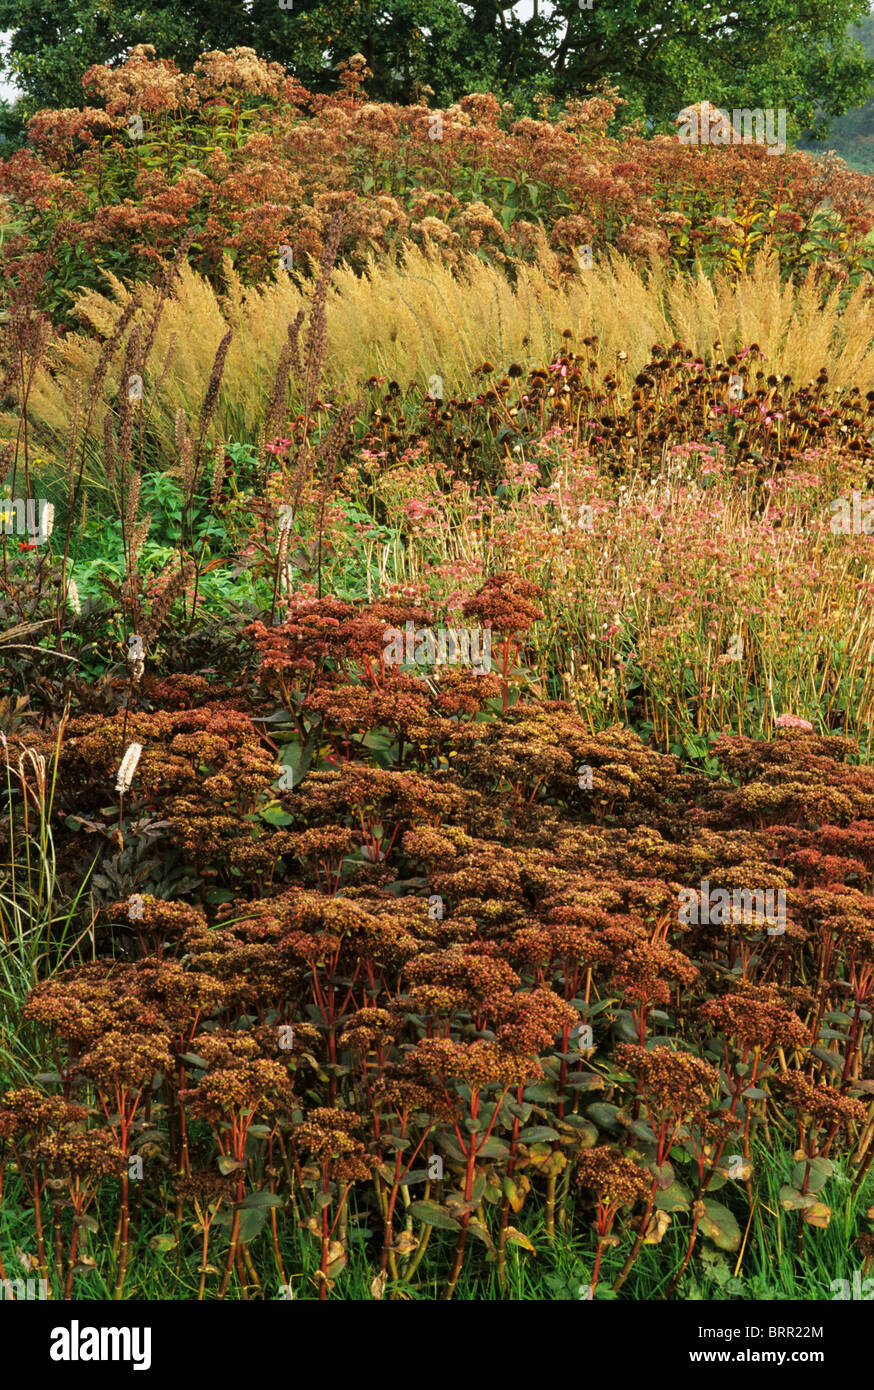 Pensthorpe Millennium giardino, Norfolk, autunno cadono erbe seme head capi seedheads bordi di confine pianta di giardino delle piante Foto Stock